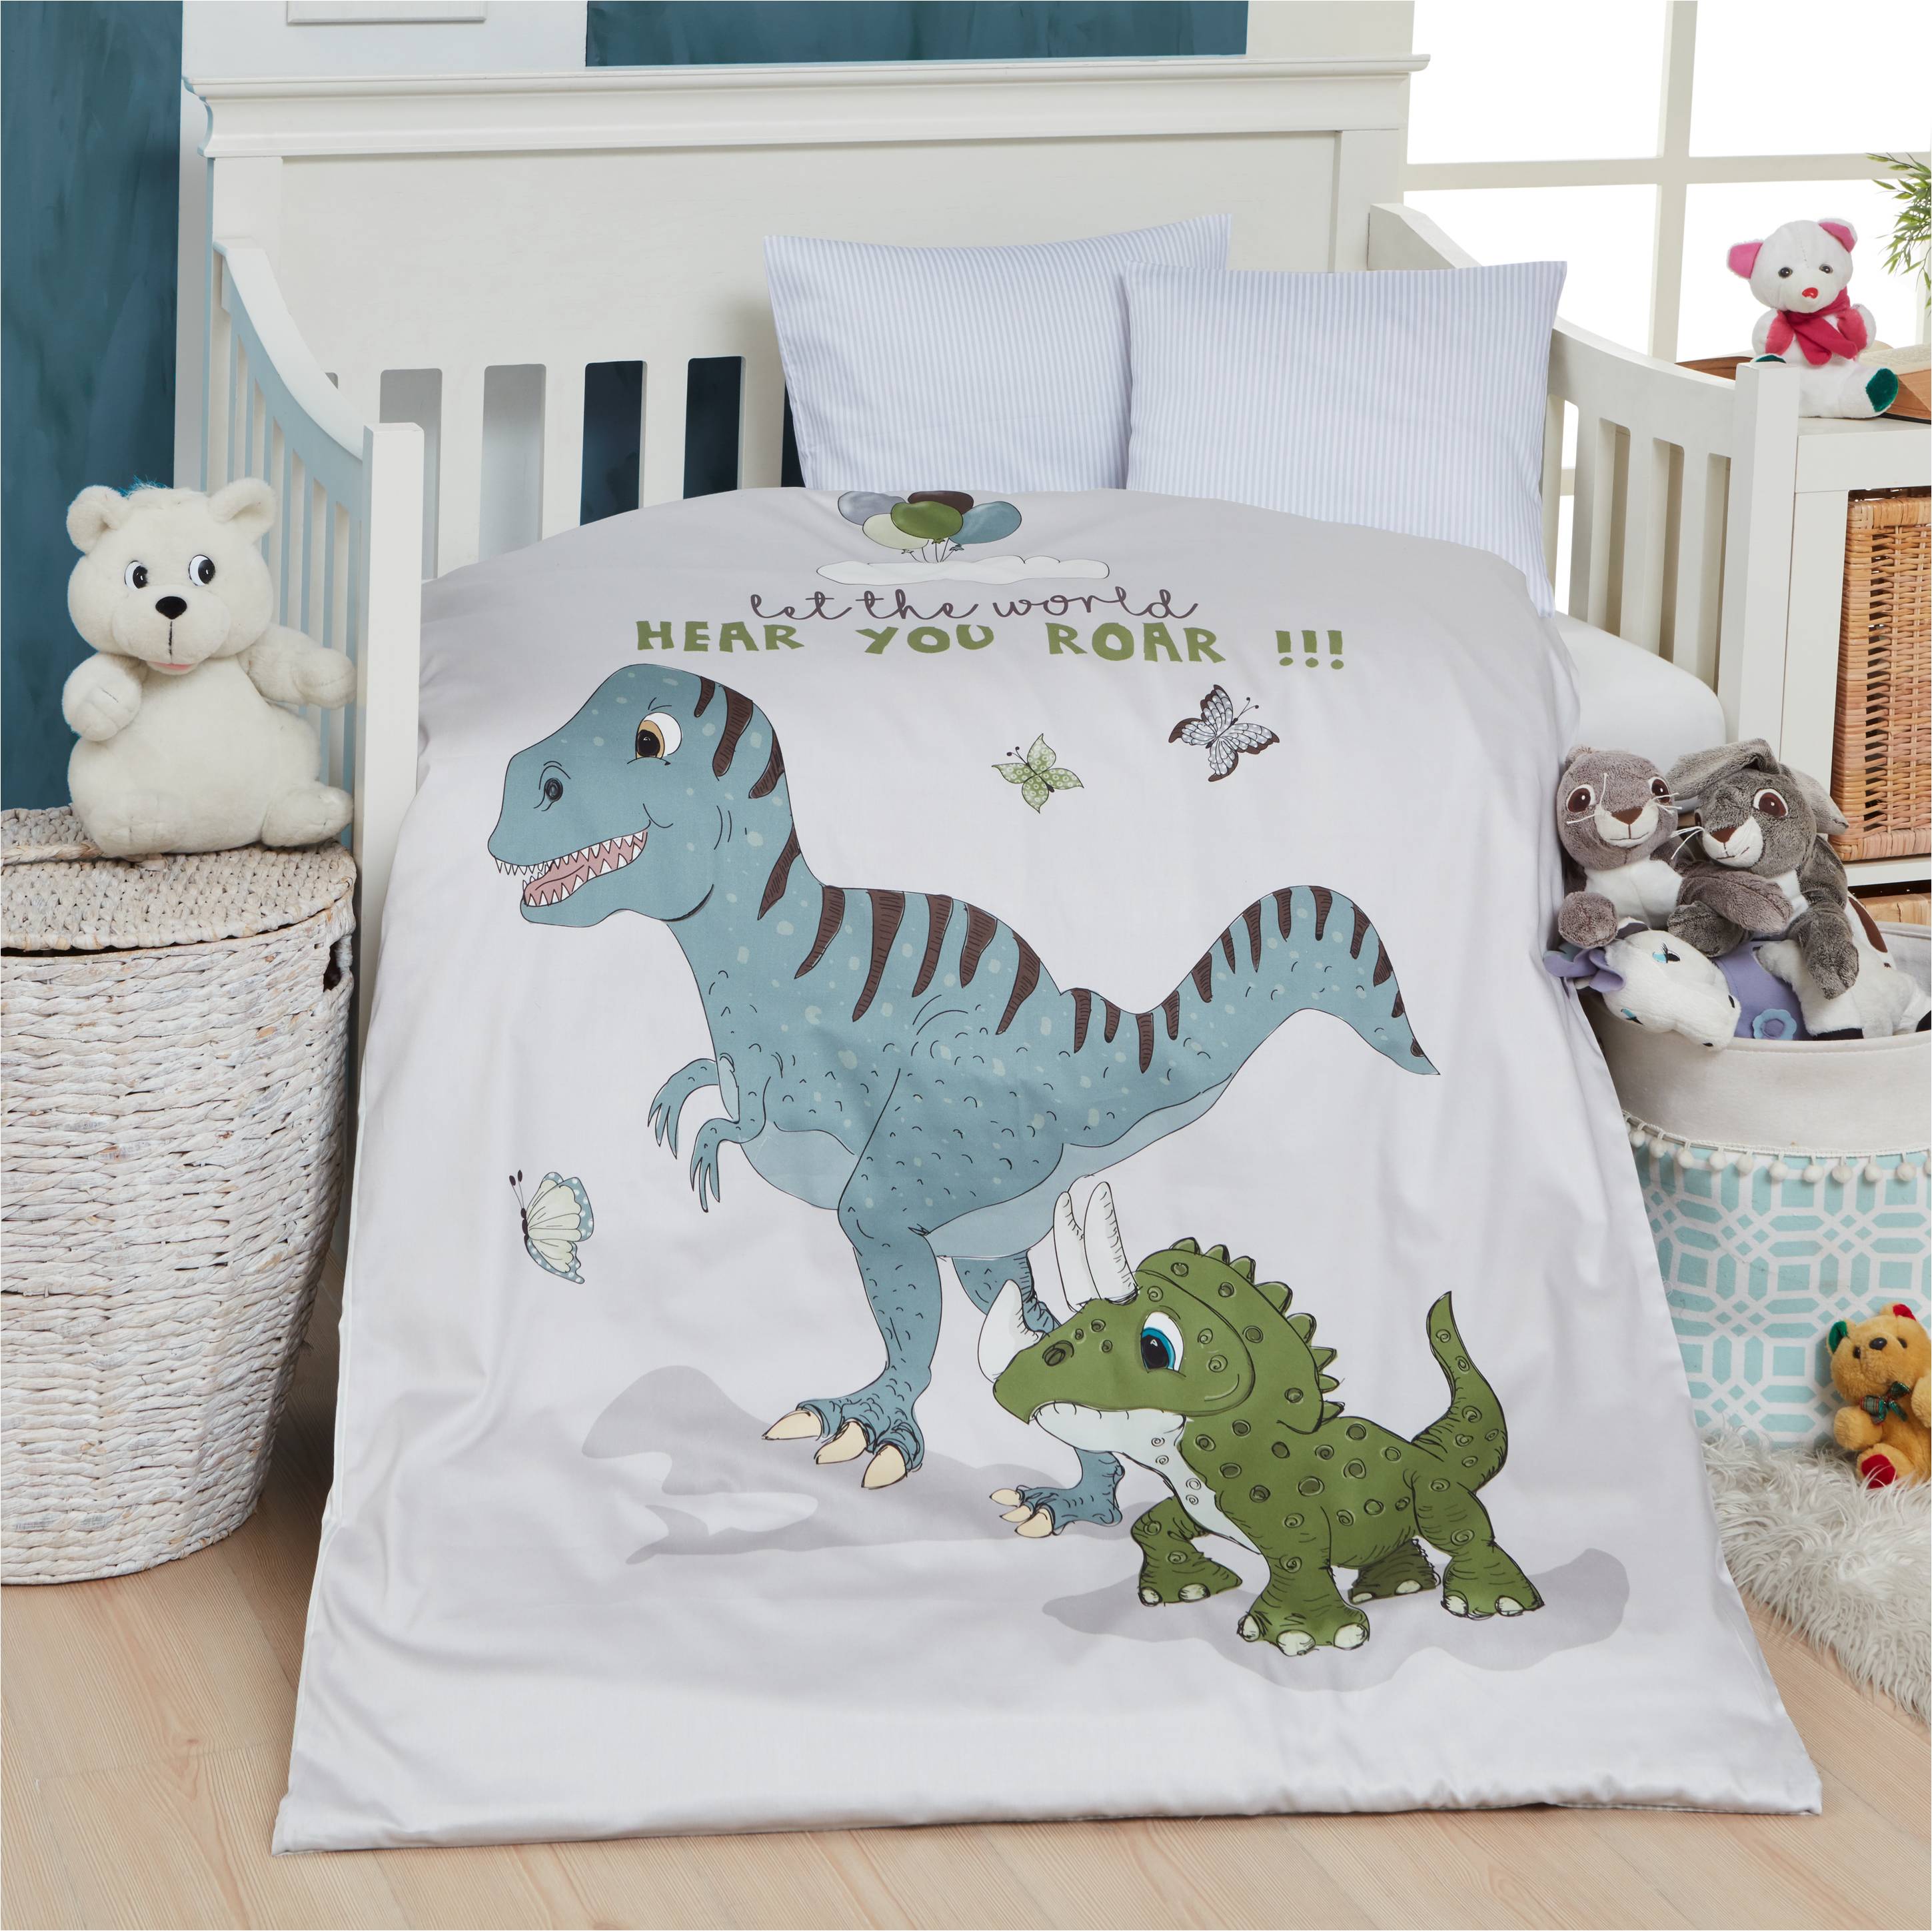 Børne sengetøj med af dinosaurer - 100x140 cm